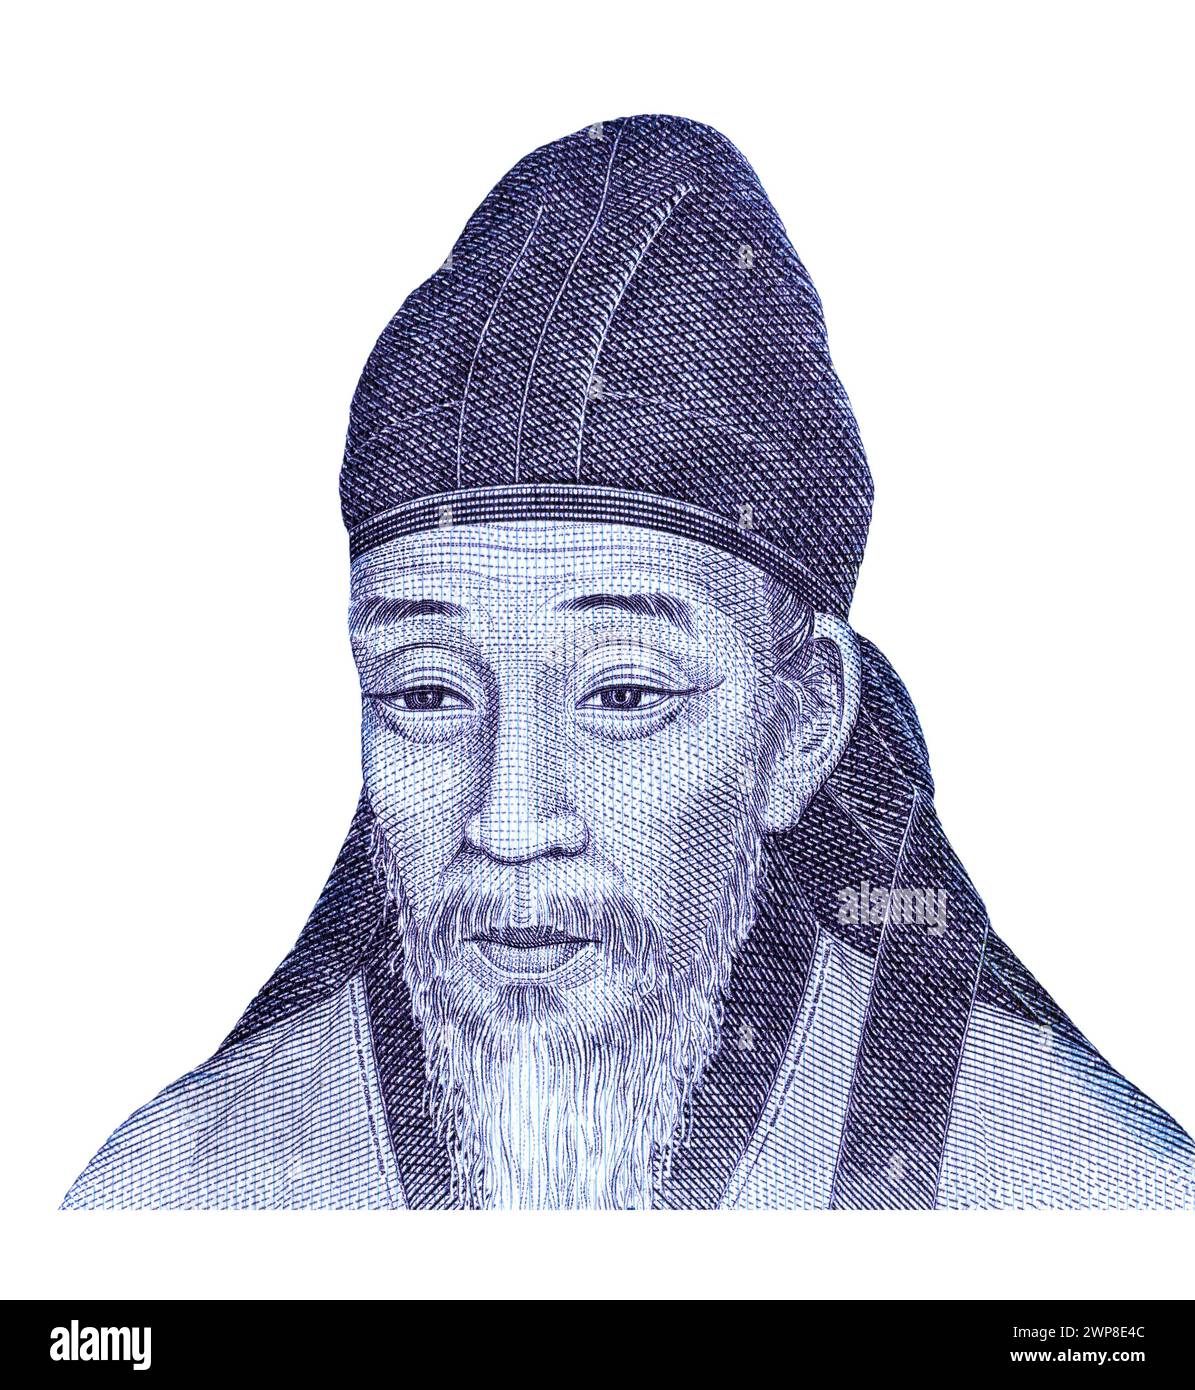 Portrait de Yi Hwang (1501 – 1570) de Corée du Sud 1000 won billet de banque. Philosophe coréen, écrivain et érudit confucéen de la dynastie Joseon Banque D'Images